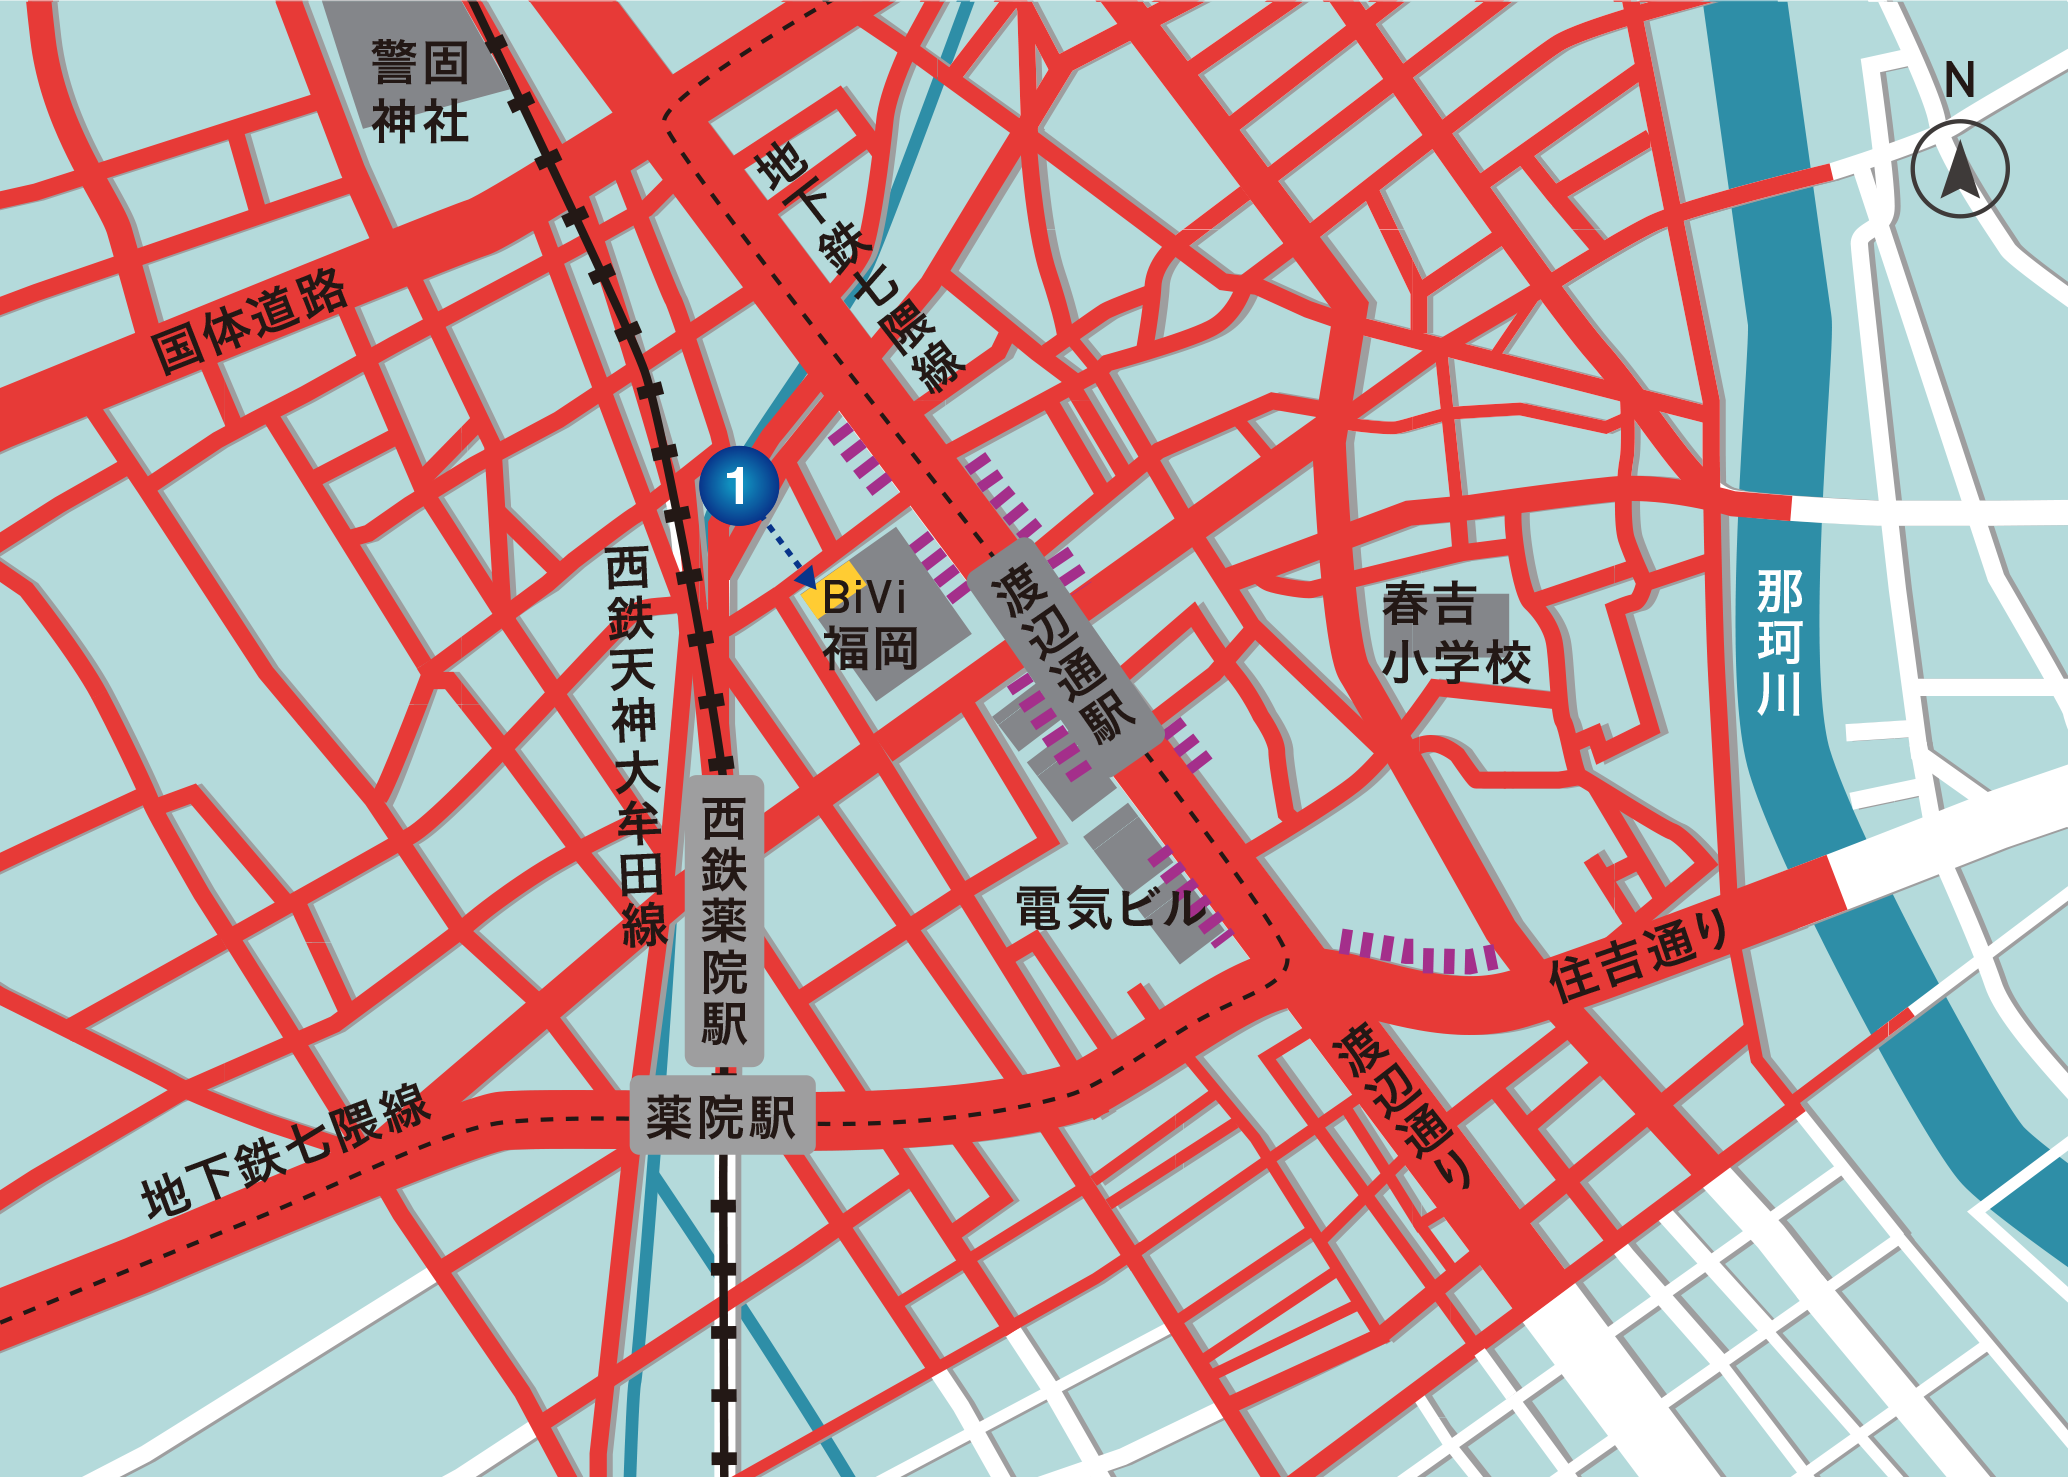 地下鉄七隈線 渡辺通駅周辺の駐輪場MAP